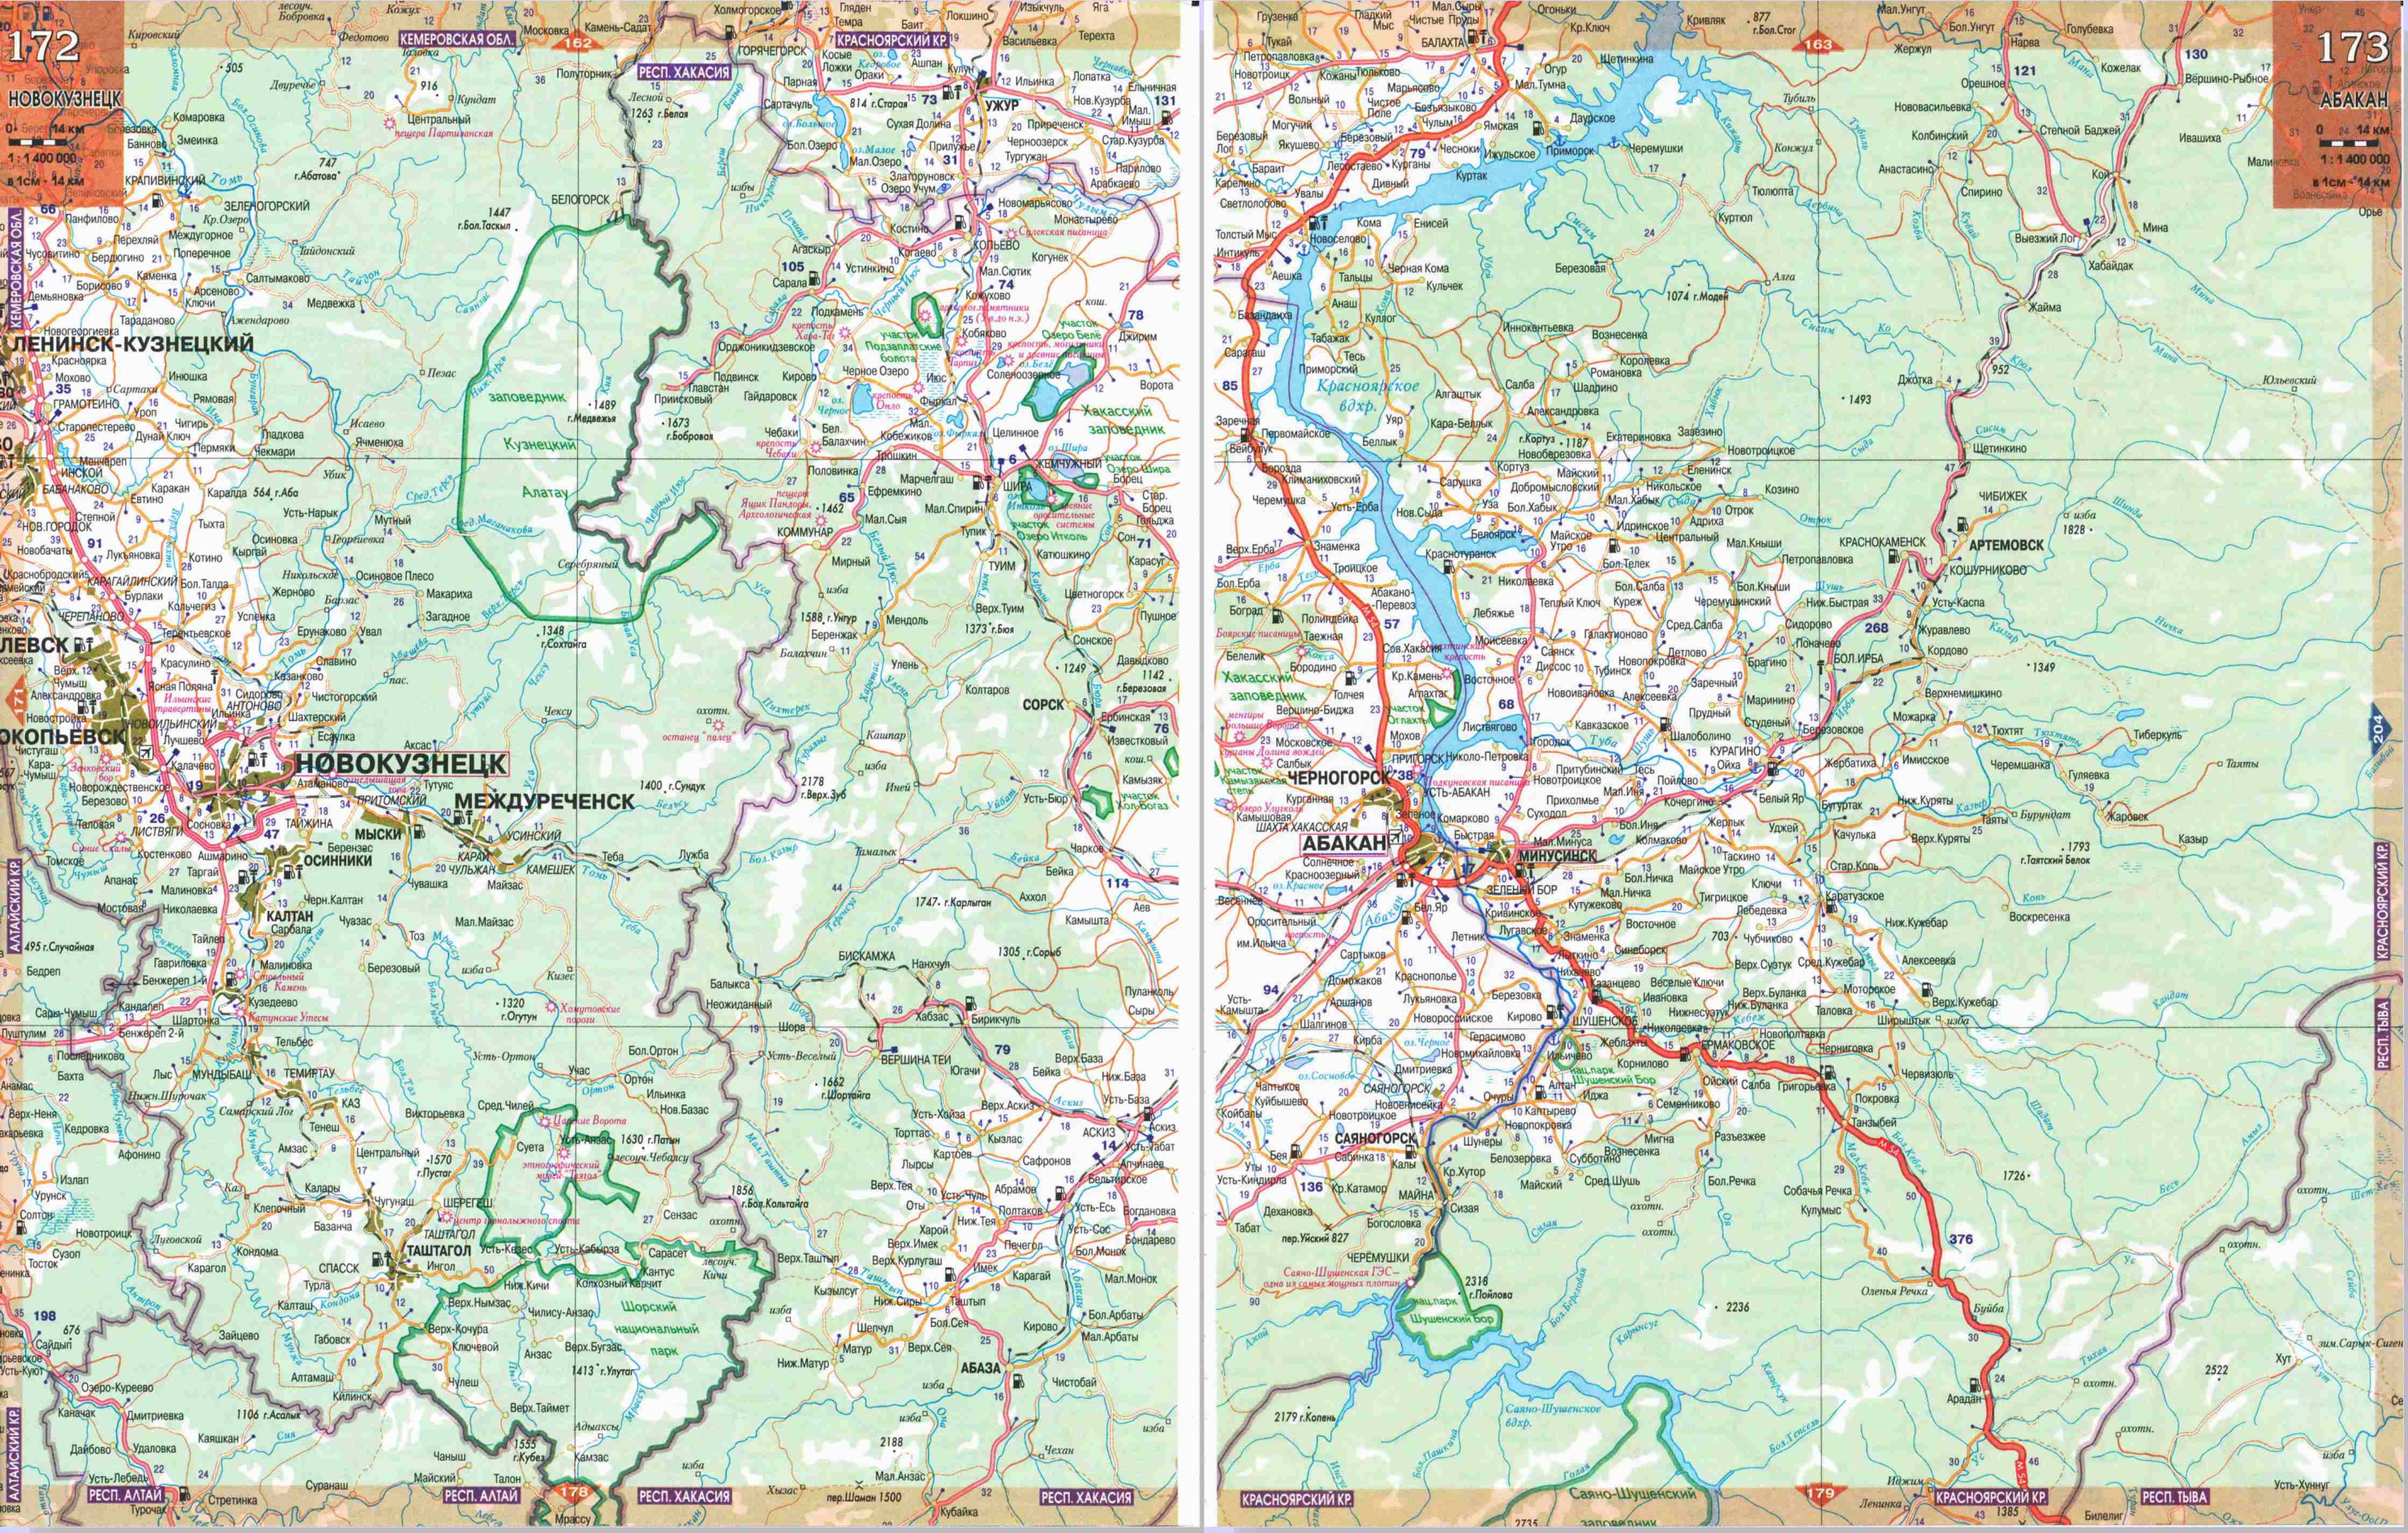 Подробная карта Хакасии и Алтая. карта горного Алтая и Хакасии